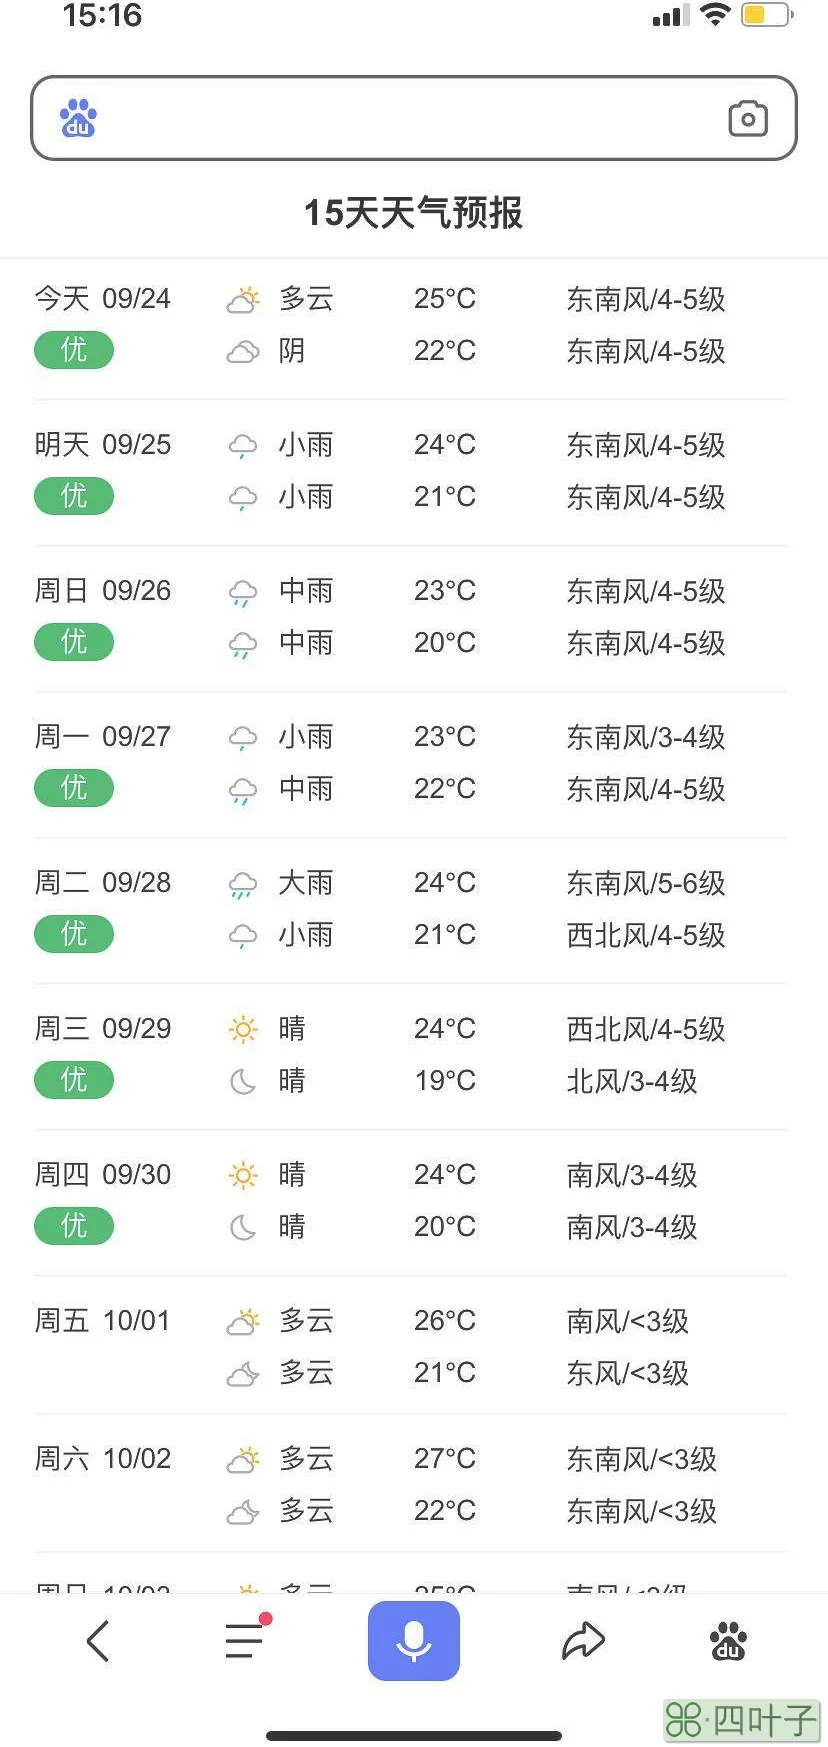 广州60天天气预报长期天气预报90天